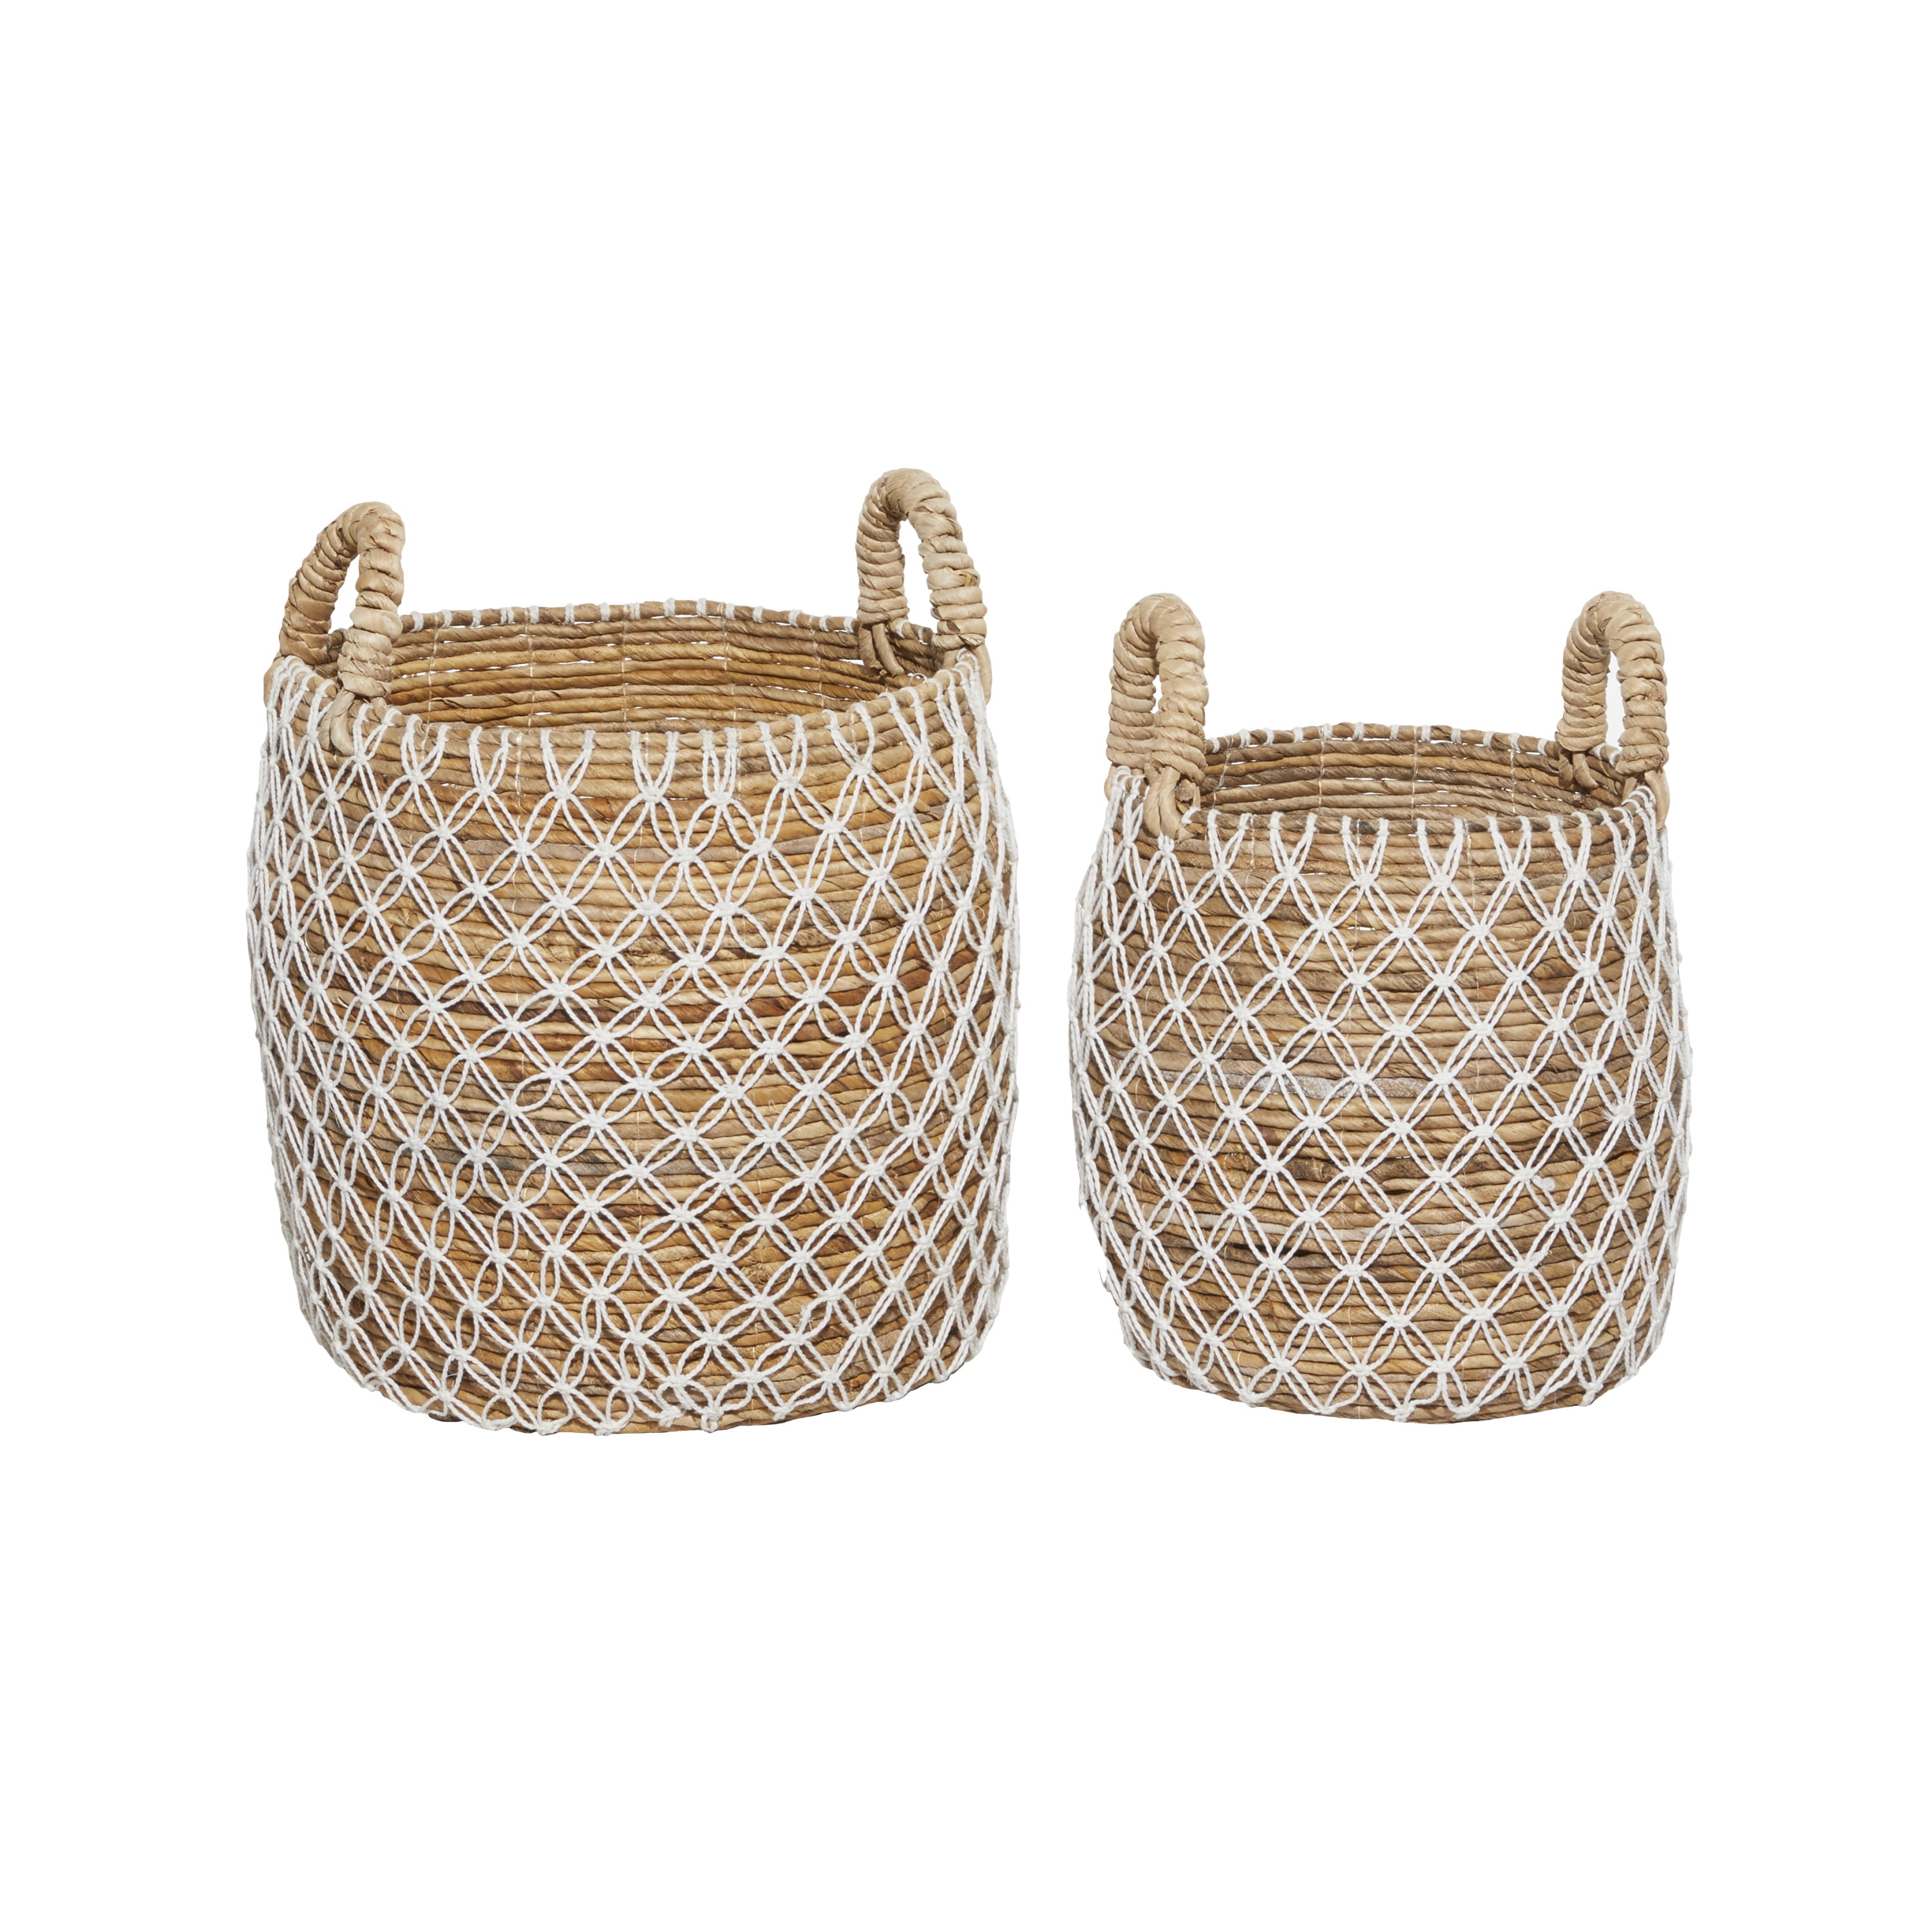 VÄXTHUS Basket, set of 2, sedge/handmade - IKEA